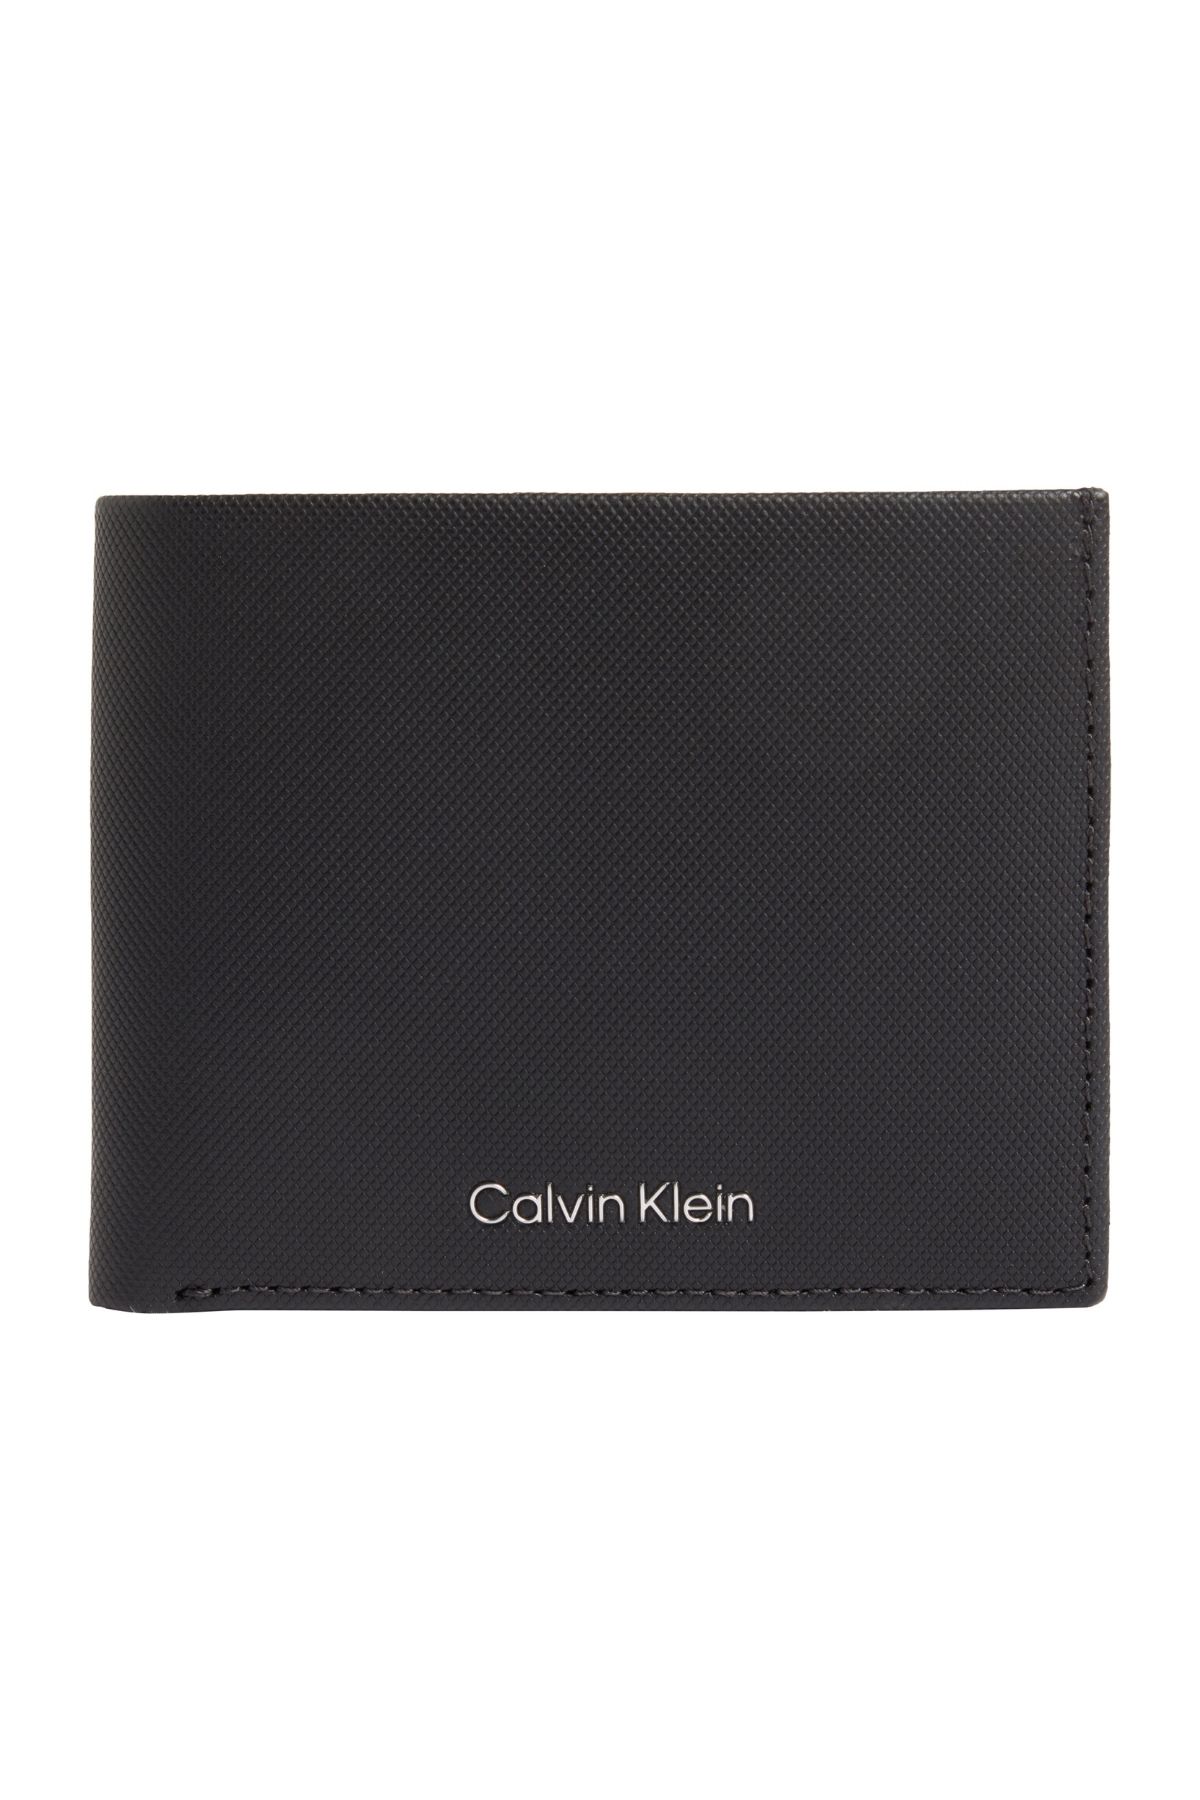 Calvin Klein CK MUST BIFOLD 6CC W/BILL